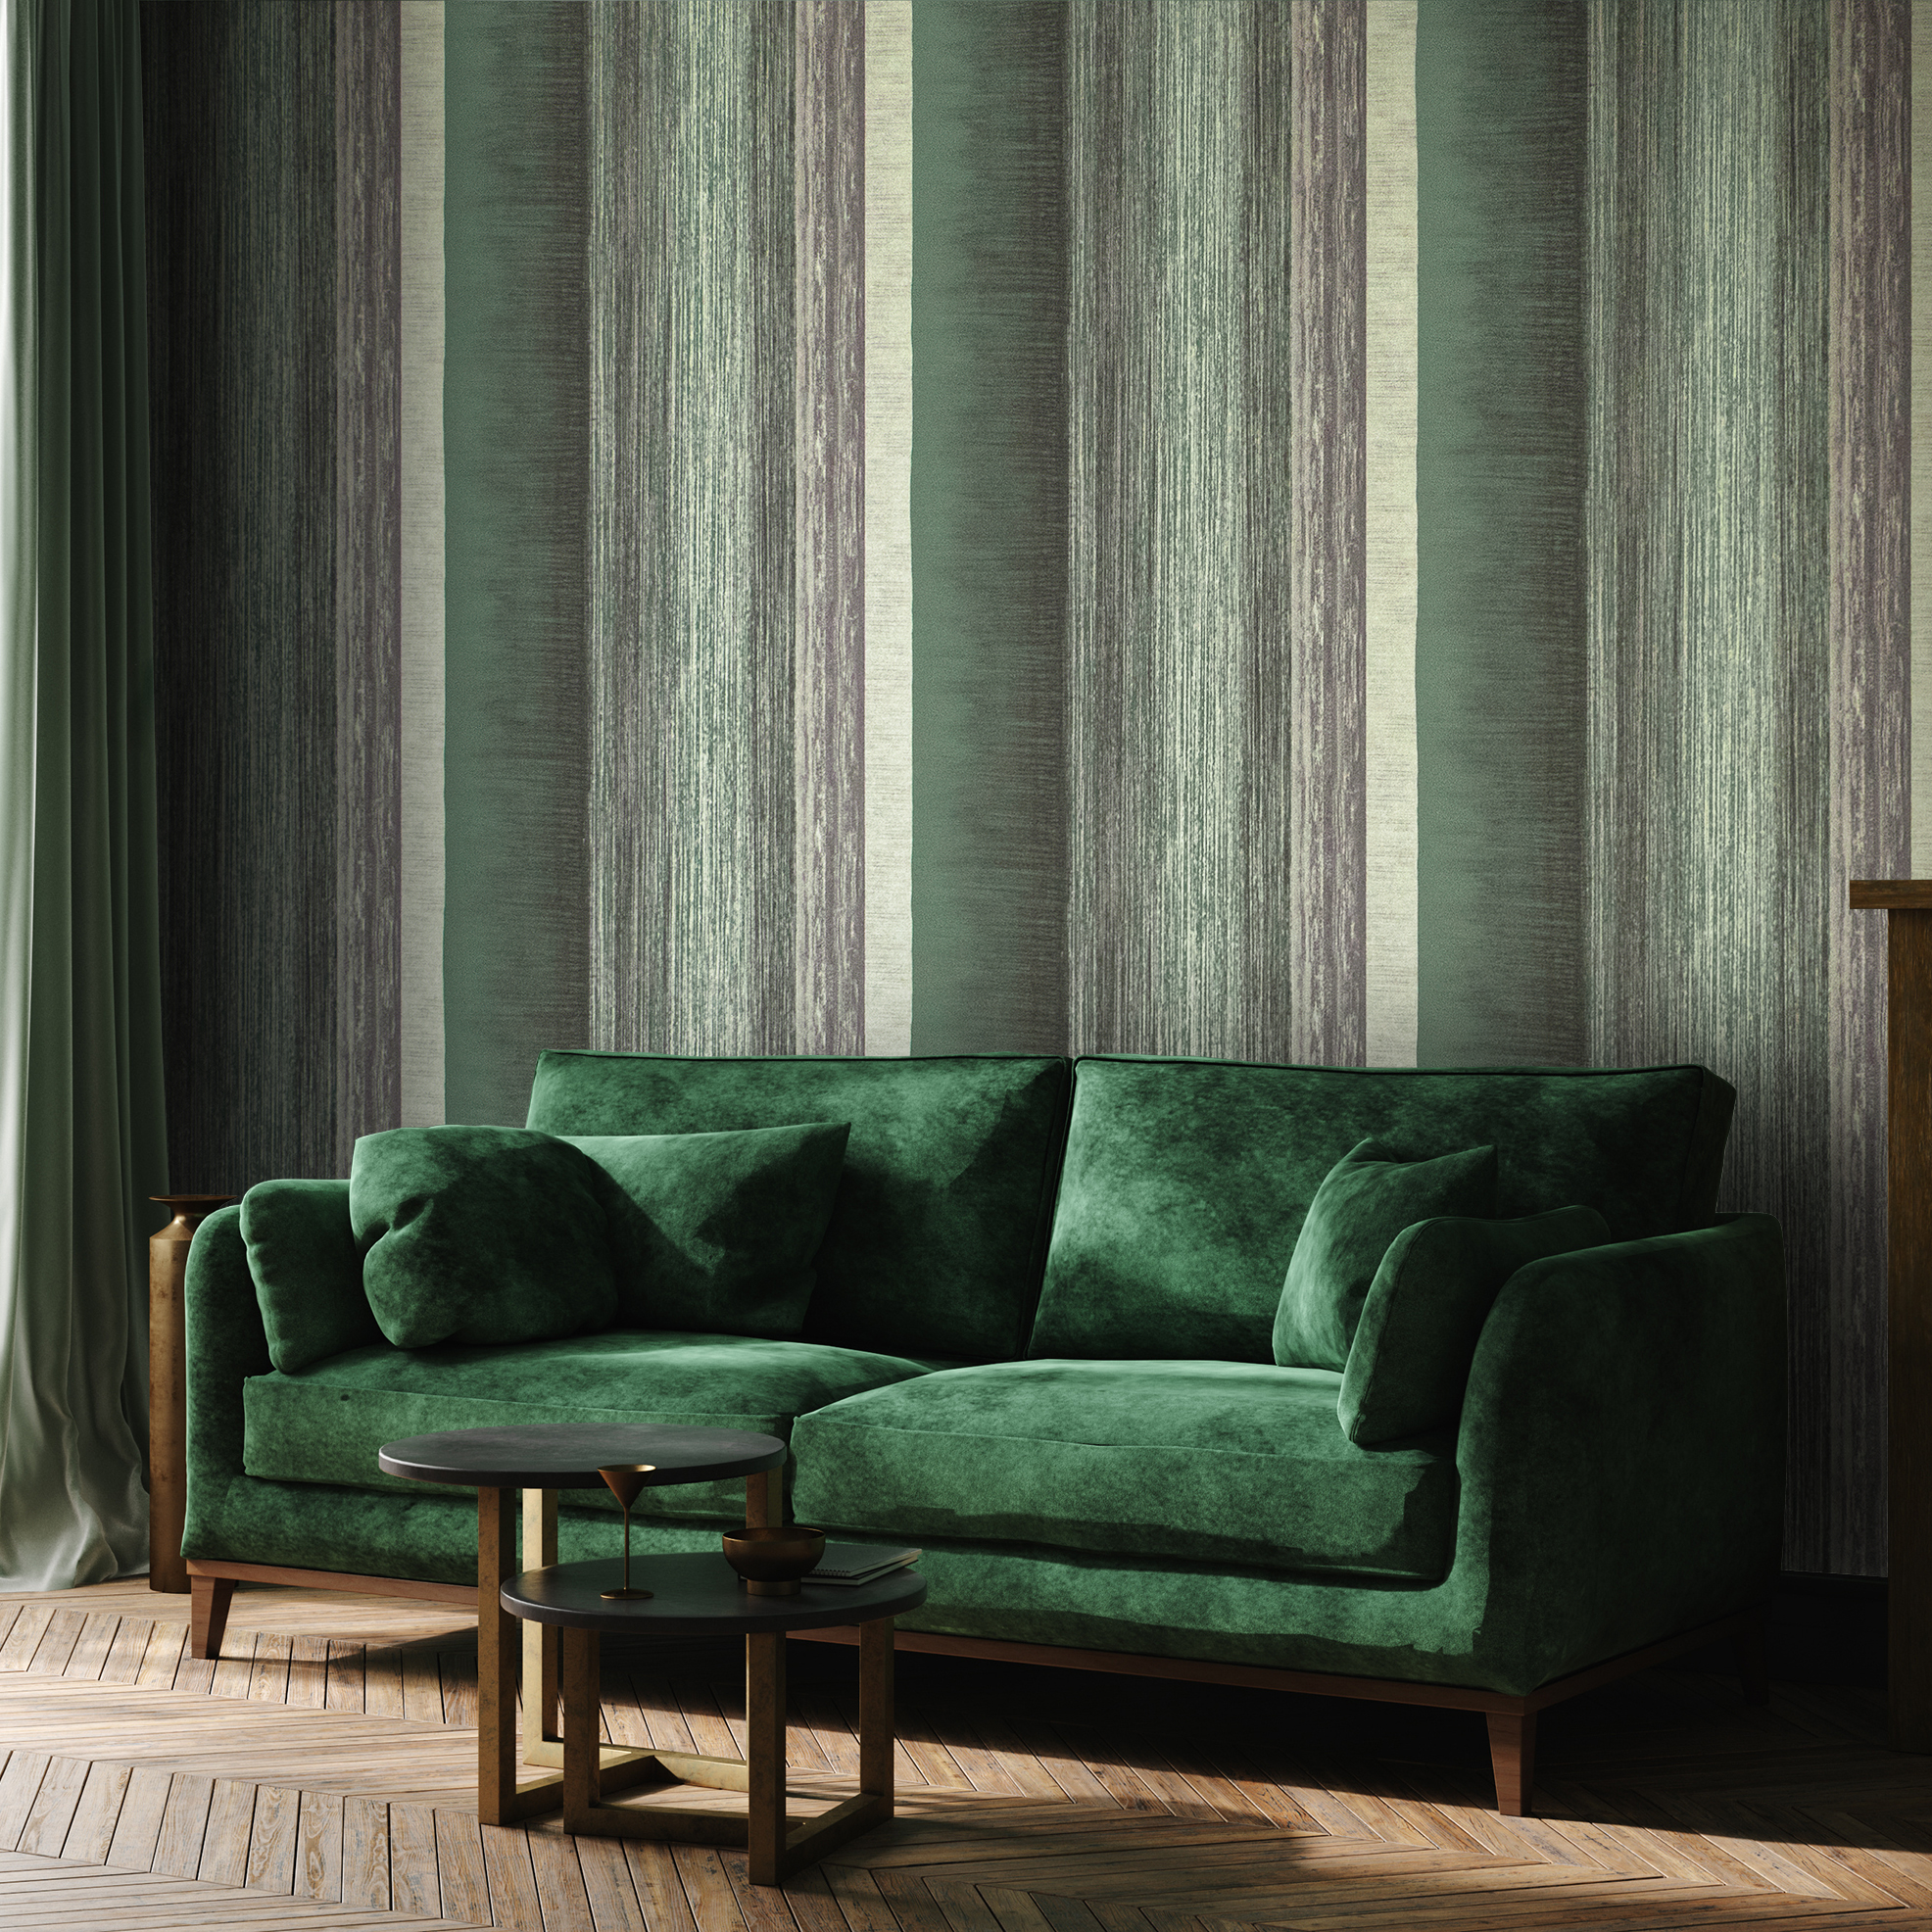 Ideal für ihr Schlafzimmer, Wohnzimmer hat Hohenberger eine grüne Vliestapete der besonderen art für sie entworfen, wohngesund und zeitloses Design